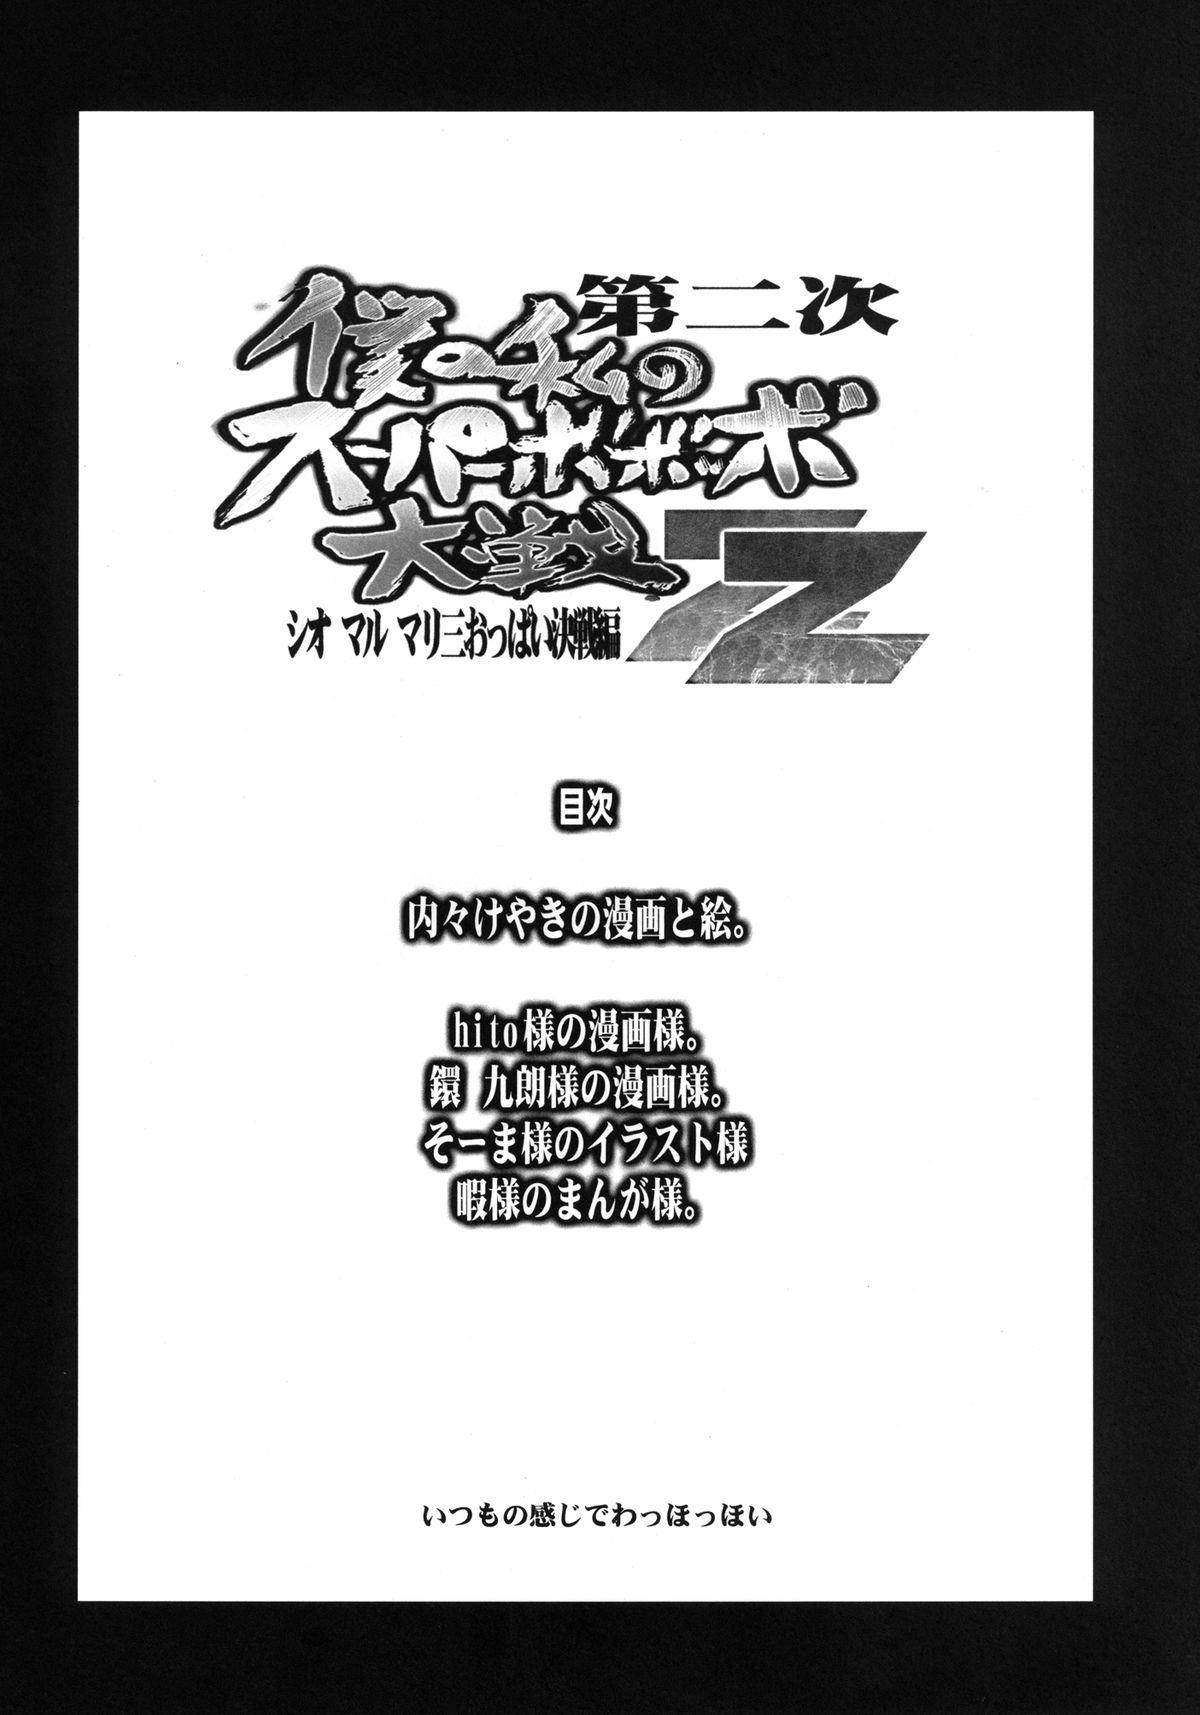 Gaybukkake Dainiji Boku no Watashi no Super Bobobbo Taisen ZZ - Cio Mar Mari 3 Oppai Kessen hen - Super robot wars Ex Girlfriends - Page 4